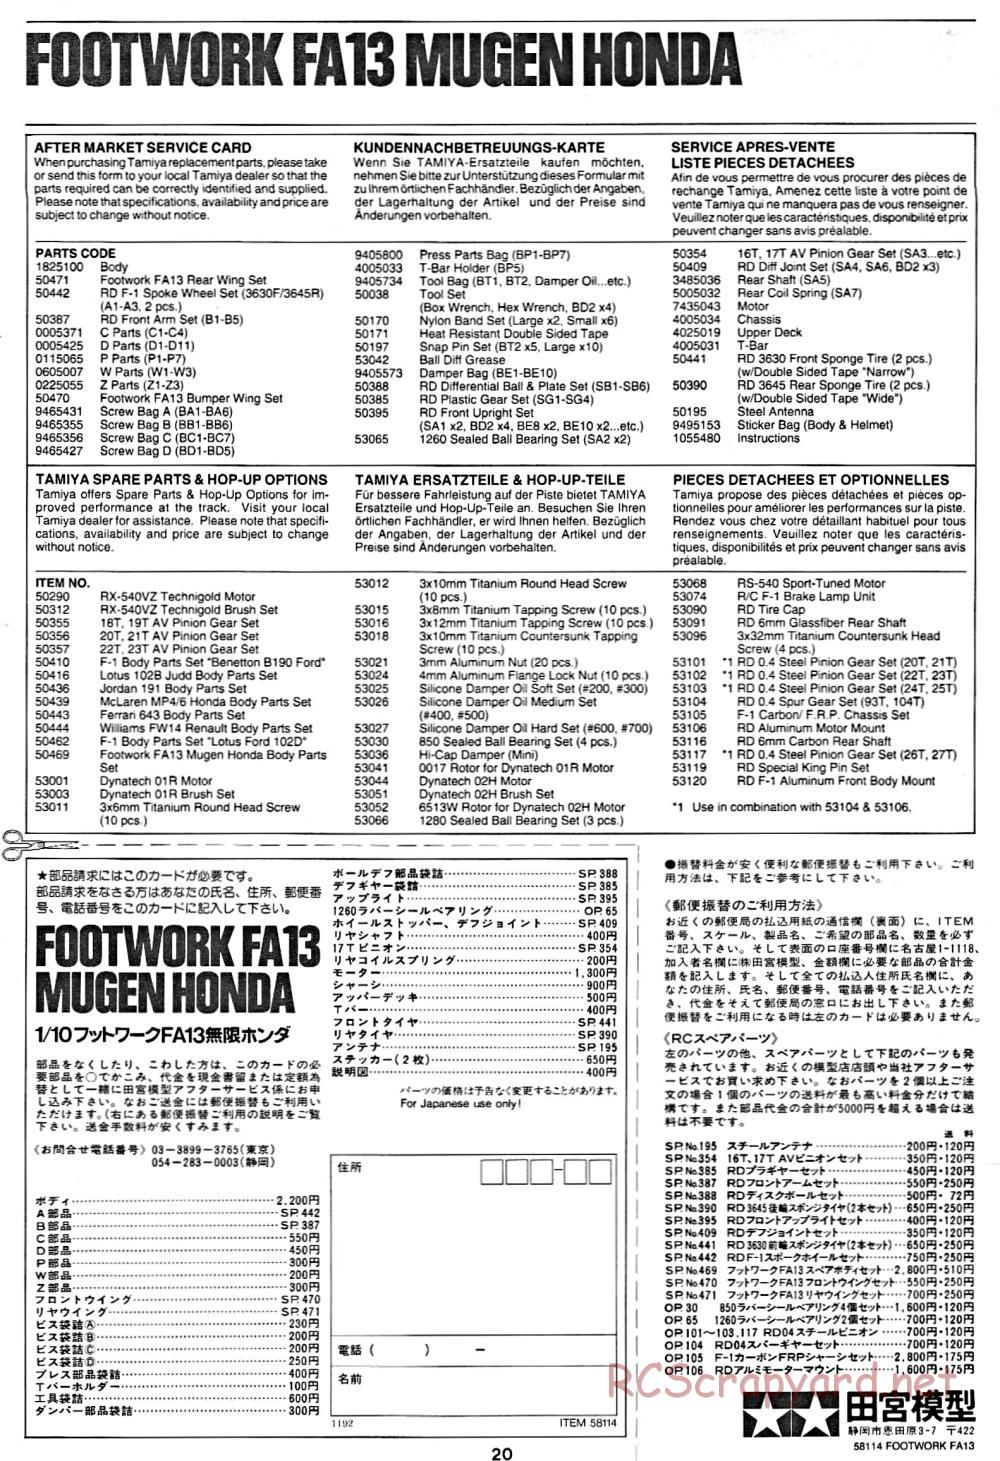 Tamiya - Footwork FA13 Mugen Honda - F102 Chassis - Manual - Page 20